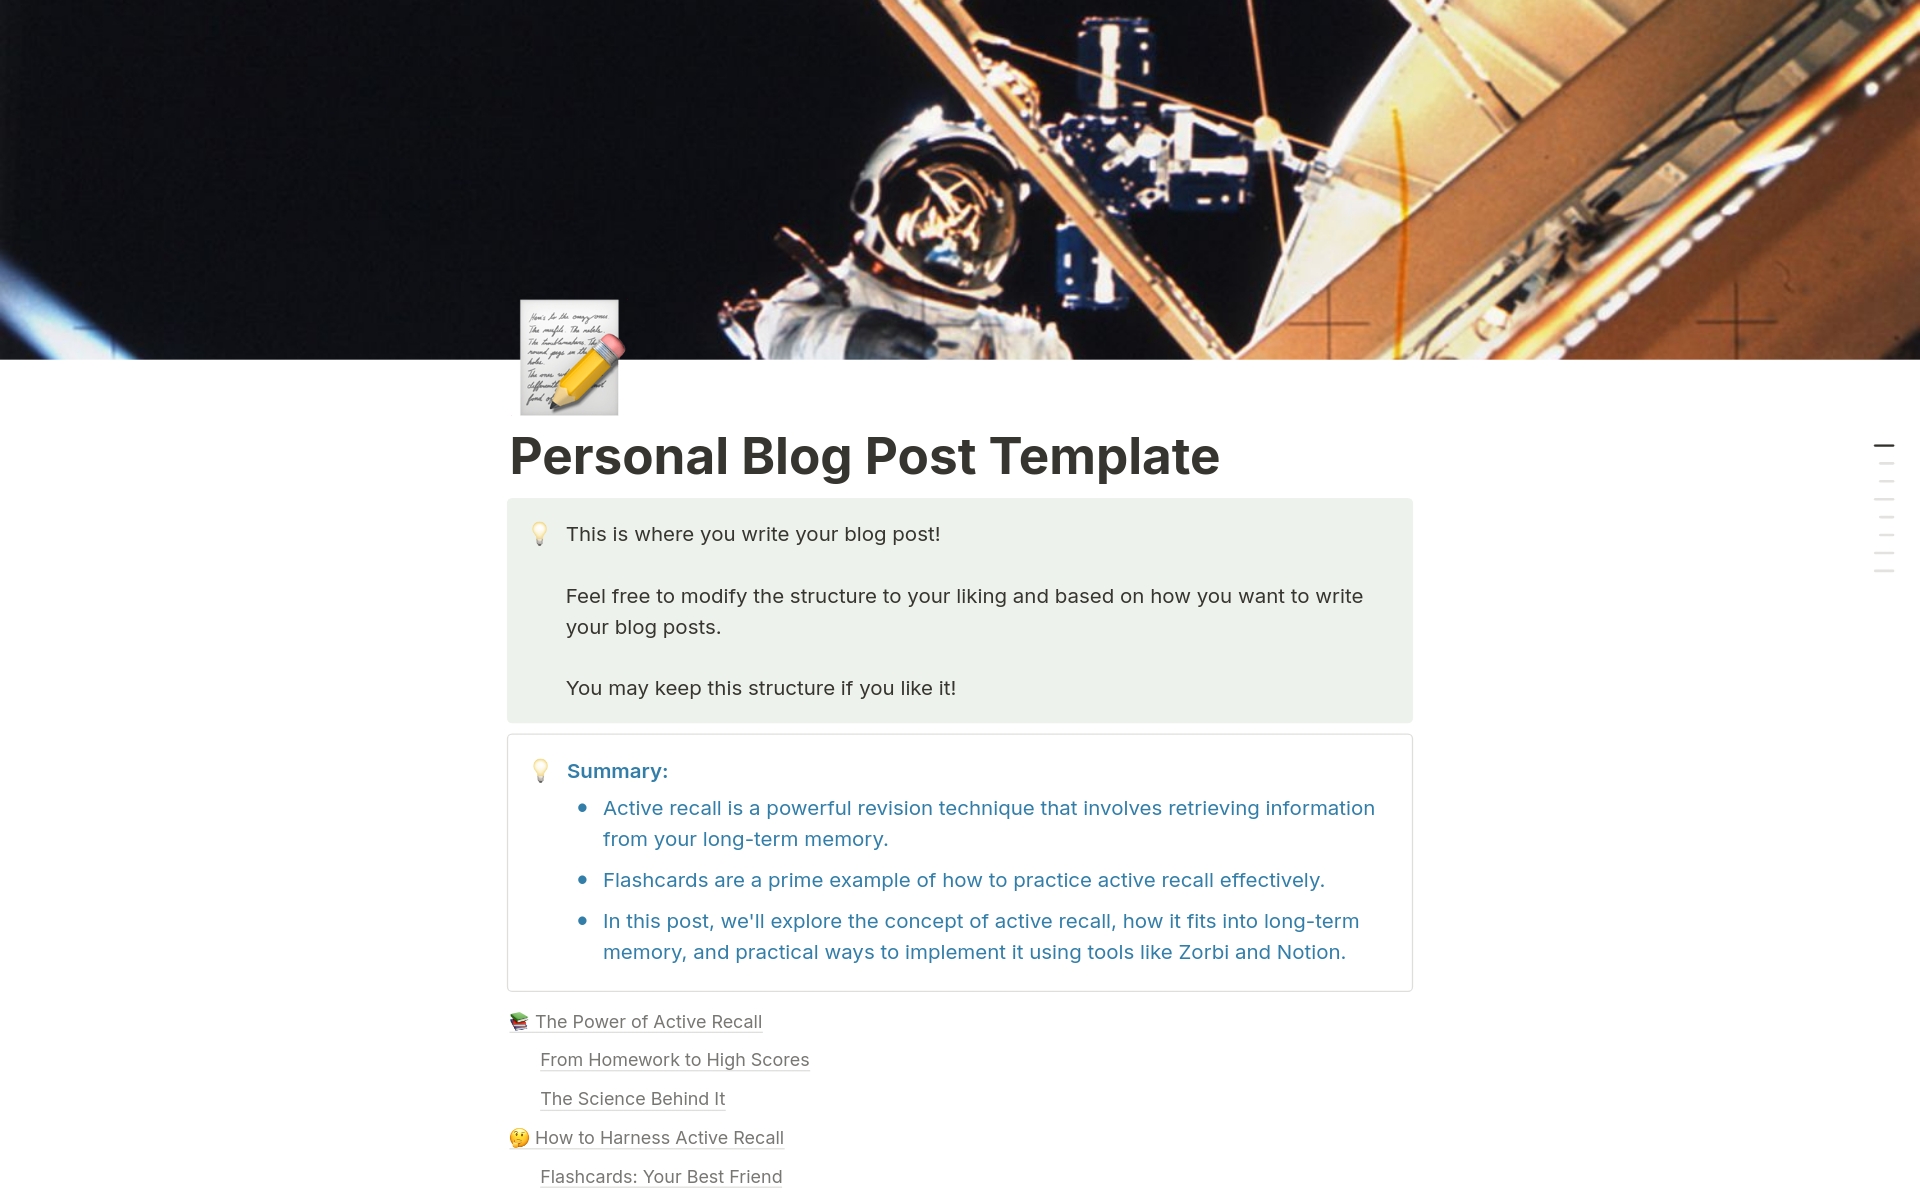 Aperçu du modèle de Personal Blog Post